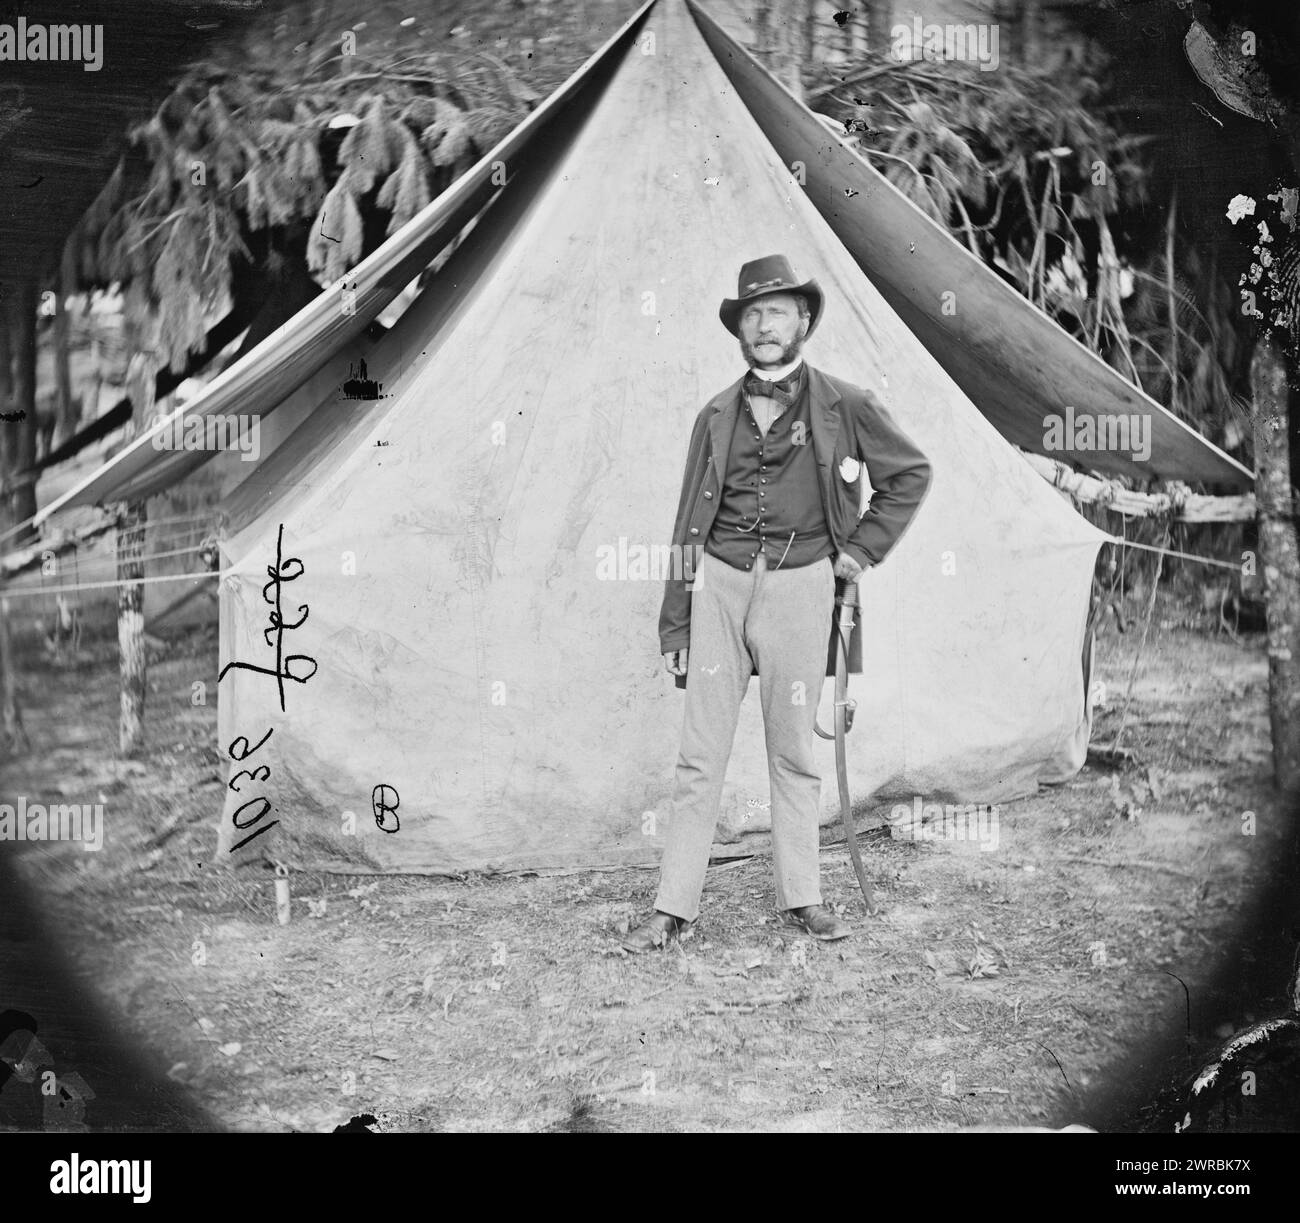 Colonnello Ernest M.P. Von Vegesack, 20th New York Infantry (capitano dell'esercito svedese), tra il 1861 e il 1869, Stati Uniti, storia, guerra civile, 1861-1865, negativi in vetro, 1860-1870, 1 negativo: vetro, collodion umido Foto Stock